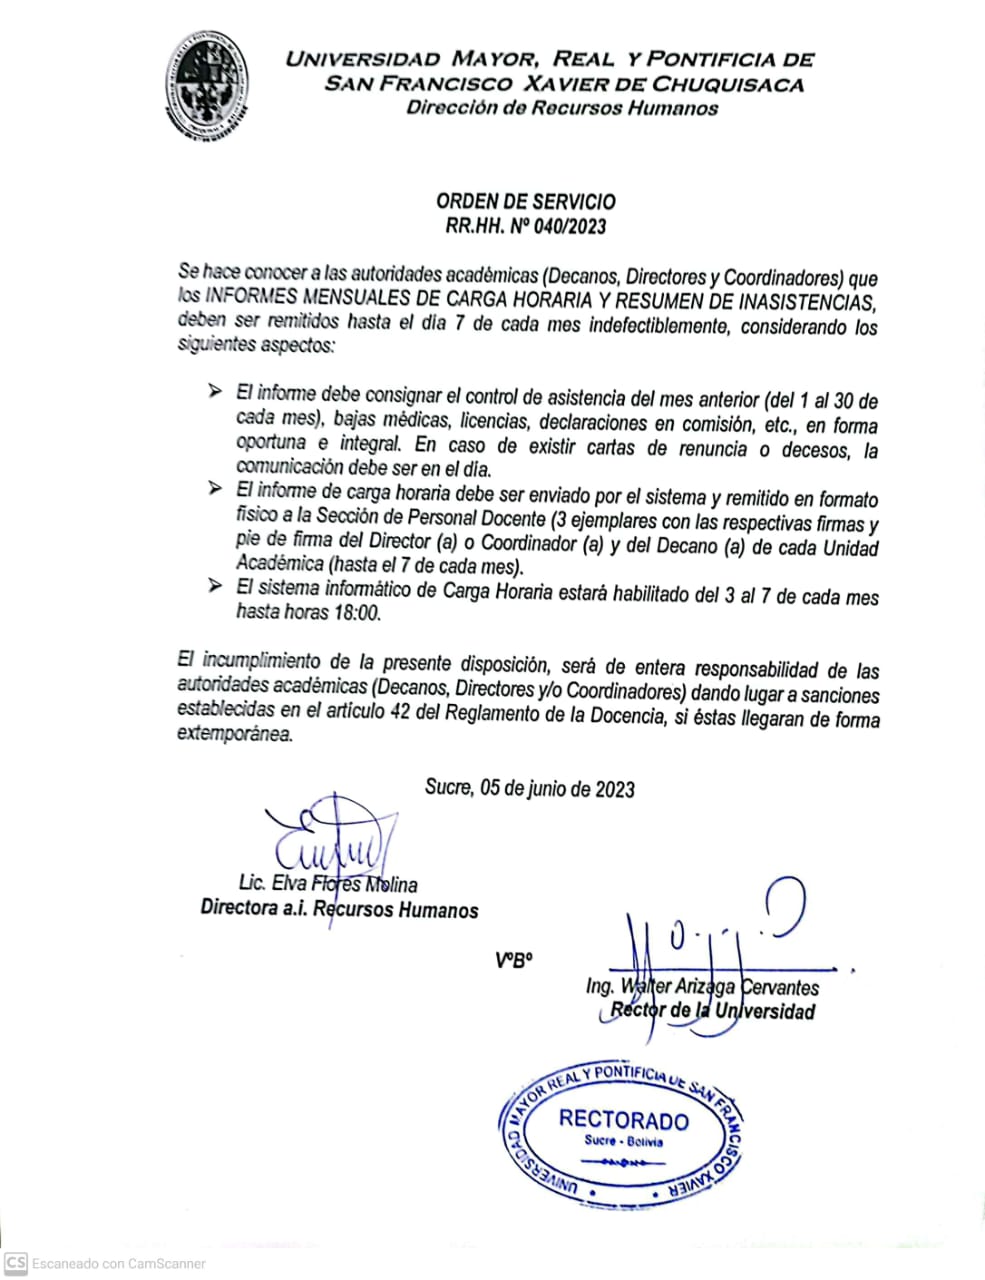 ORDEN DE SERVICIO RR.HH. N° 040/2023 INFORME MENSUAL CARGA HORARIA